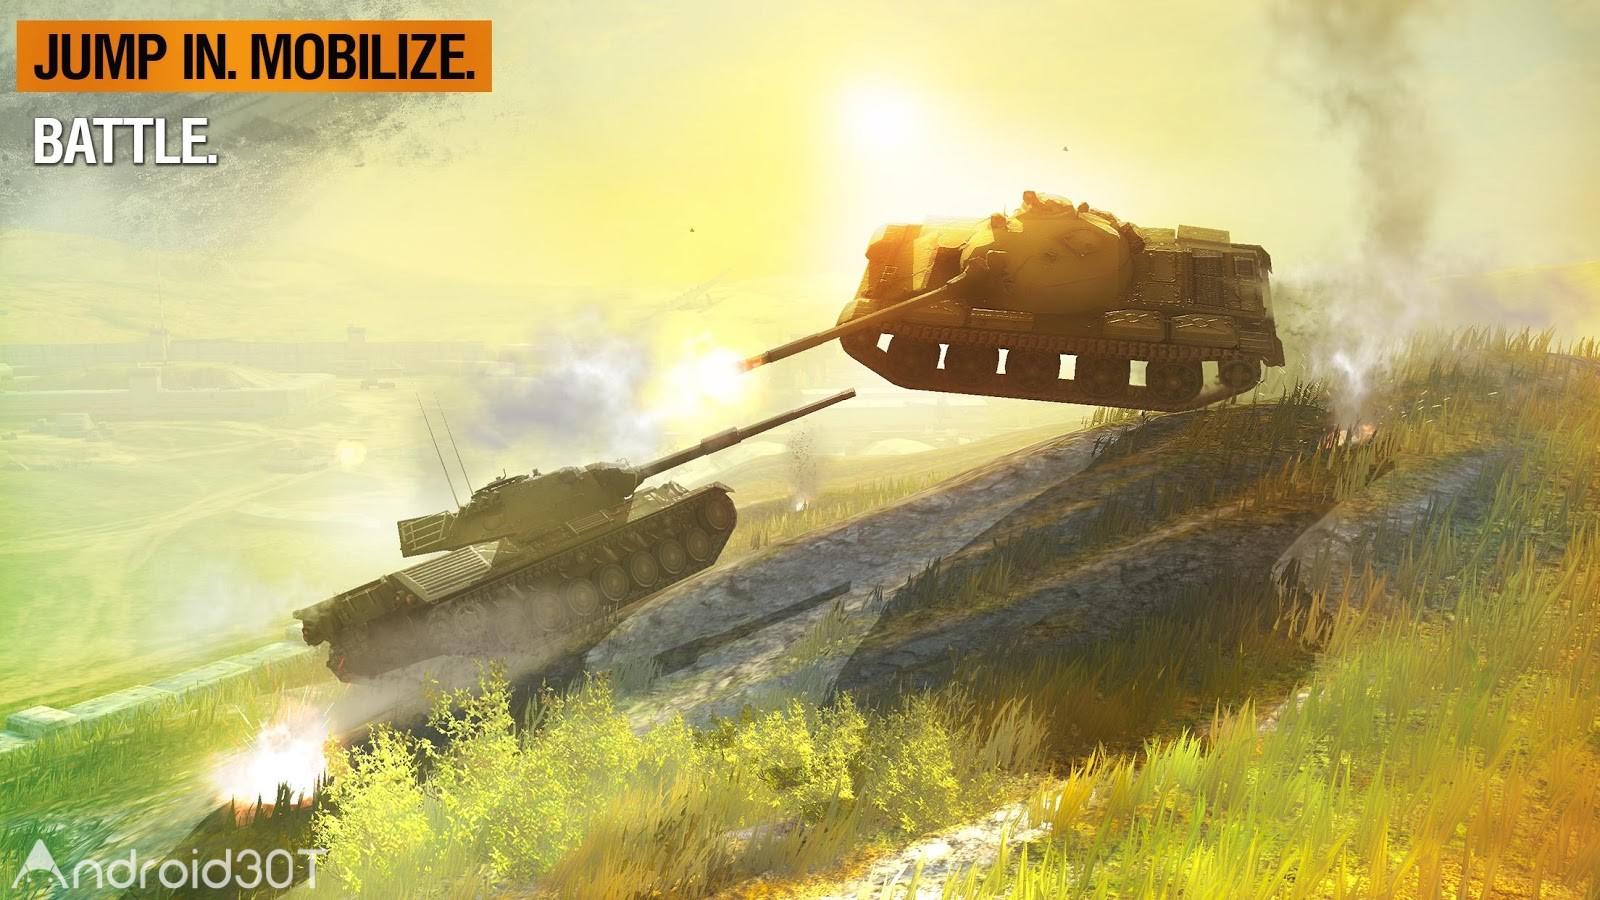 دانلود World of Tanks Blitz 9.4.0.624 – دانلود بازی جهان نبرد تانک ها اندروید